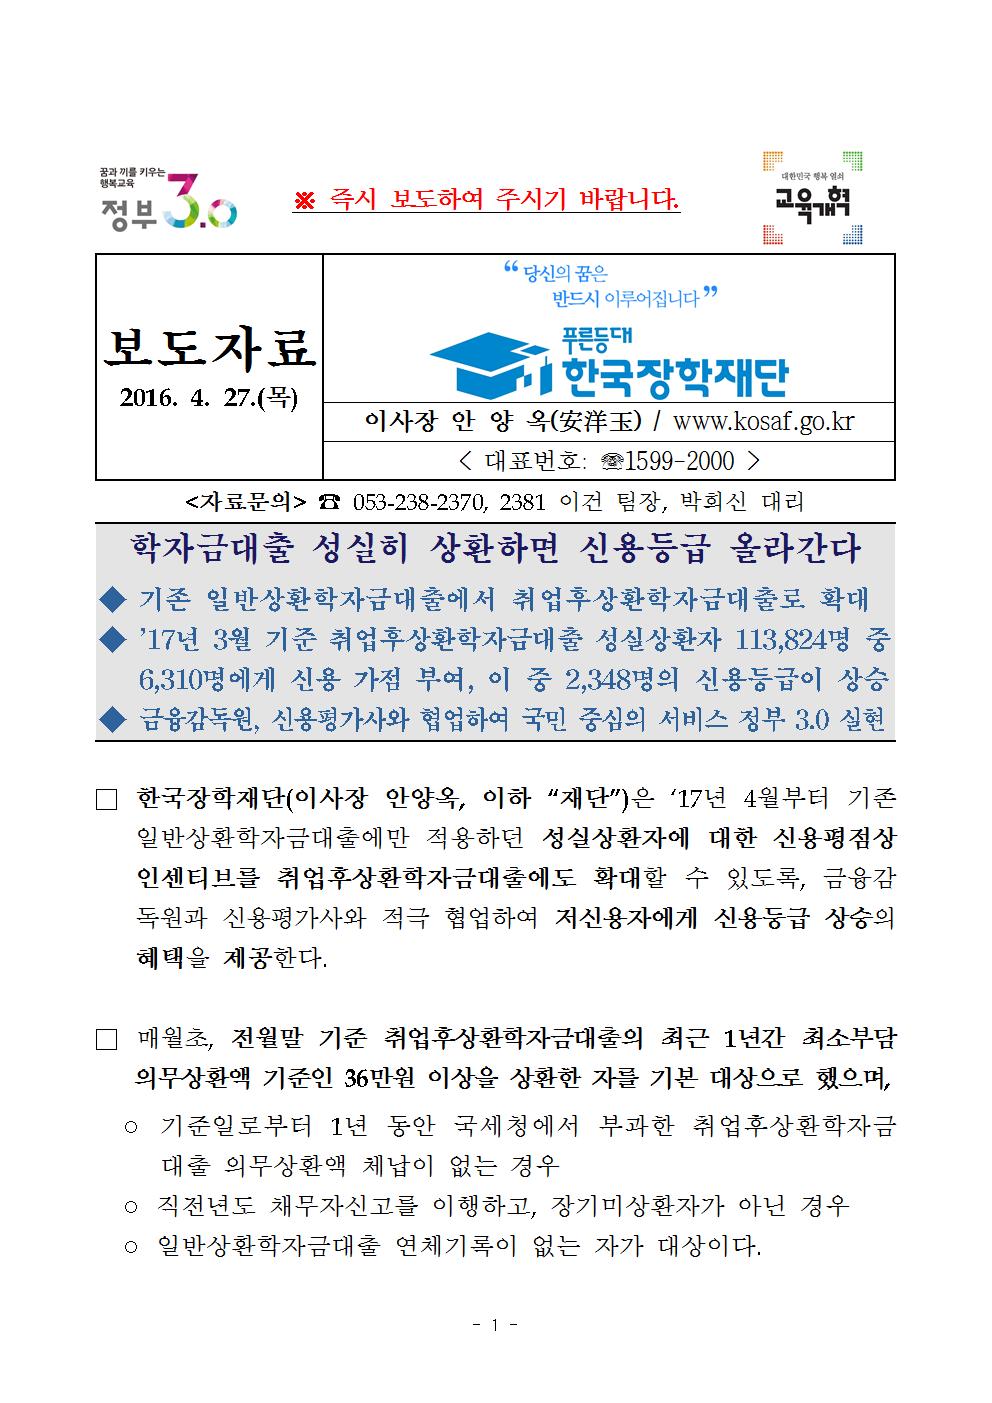 한국장학재단 보도자료 학자금대출 성실히 상환하면 신용등급 올라간다 관련 이미지입니다. 자세한 내용은 아래를 참고하세요